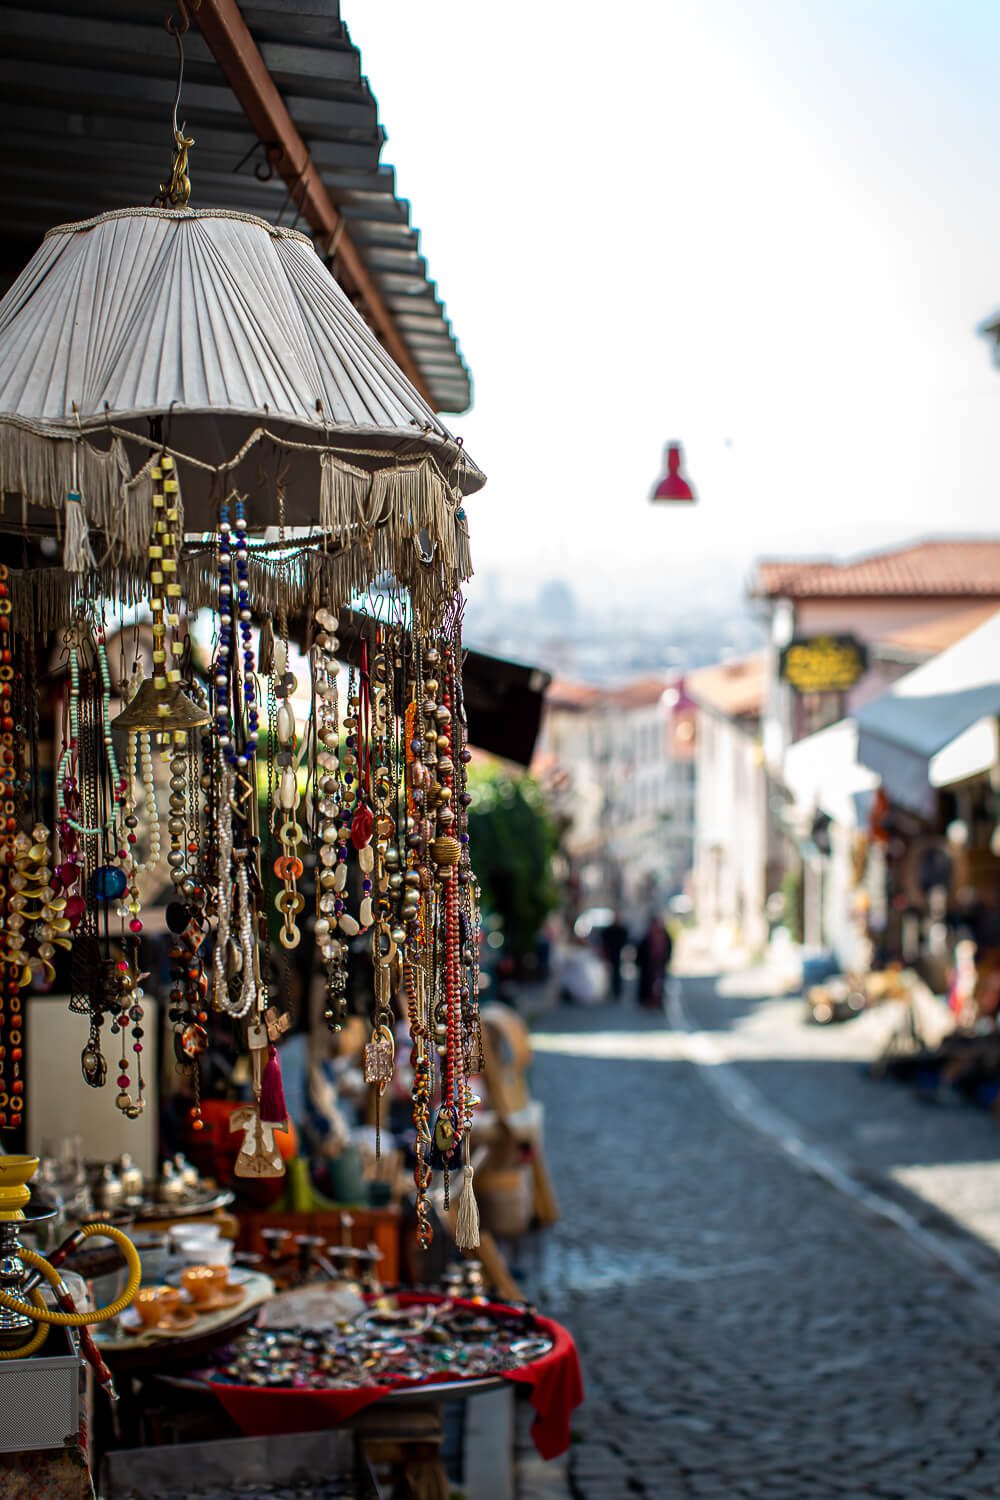 The local Markets of Ankara